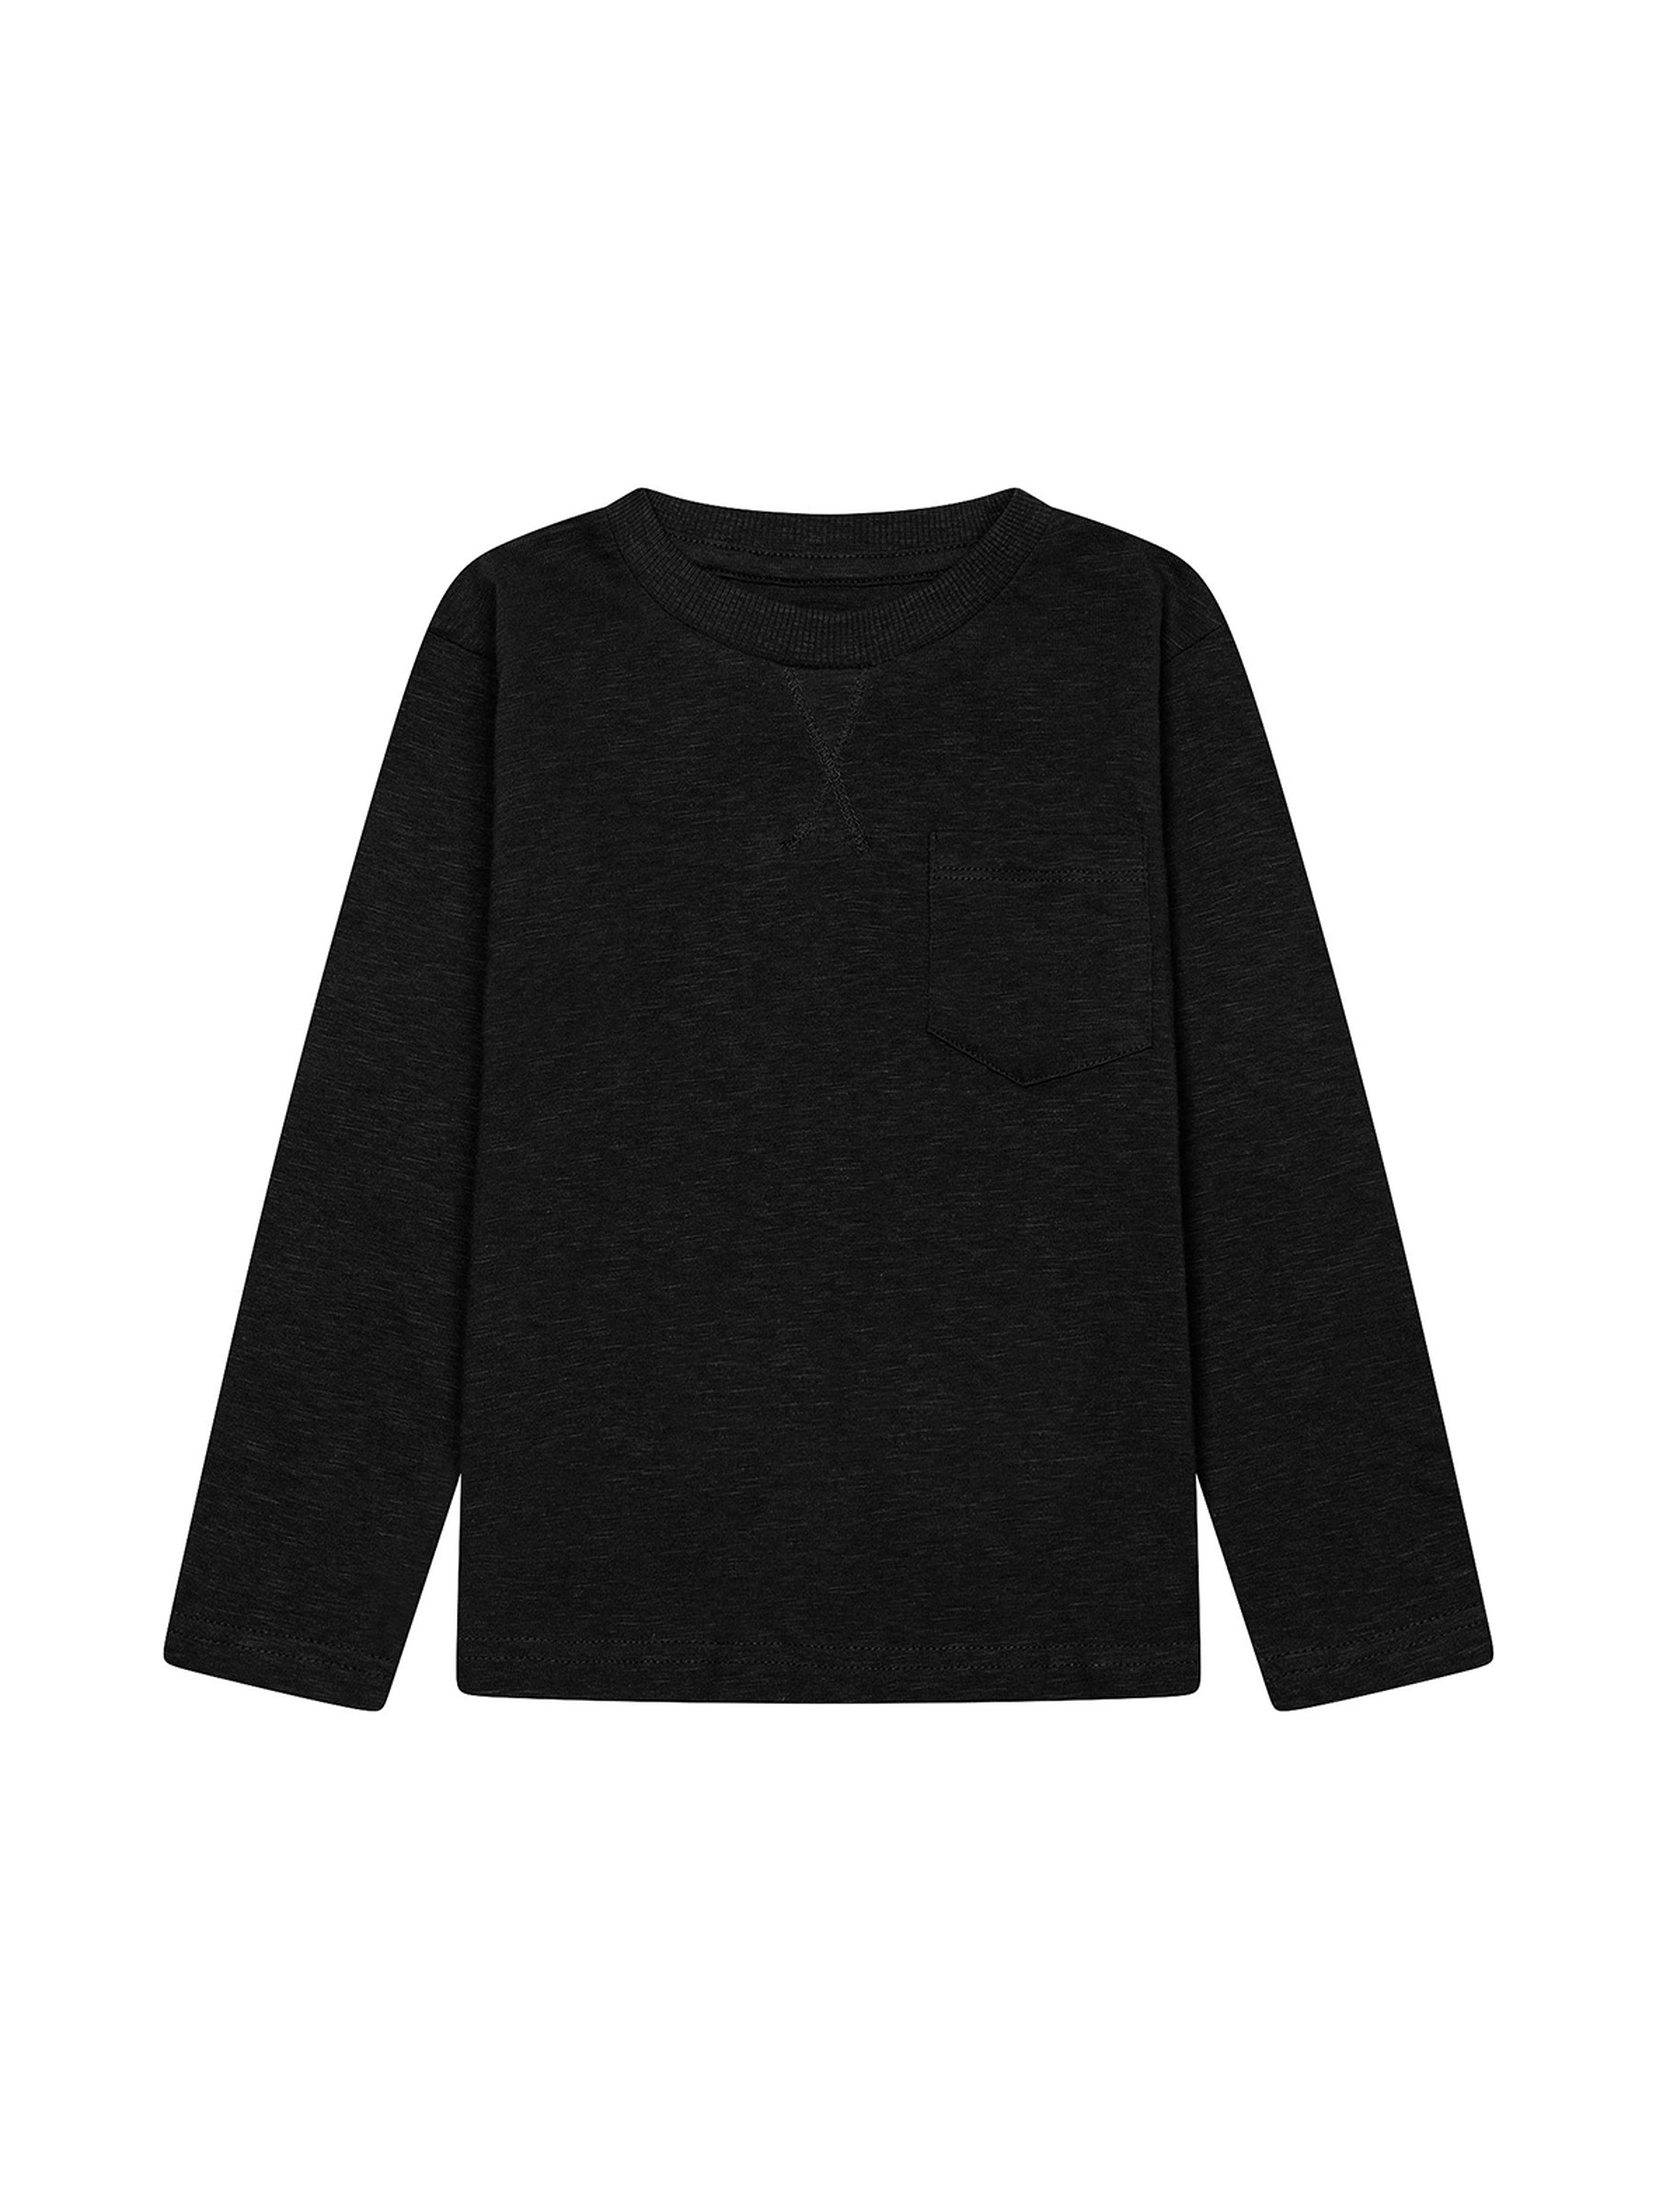 Czarna bluzka chłopięca bawełniana z długim rękawem